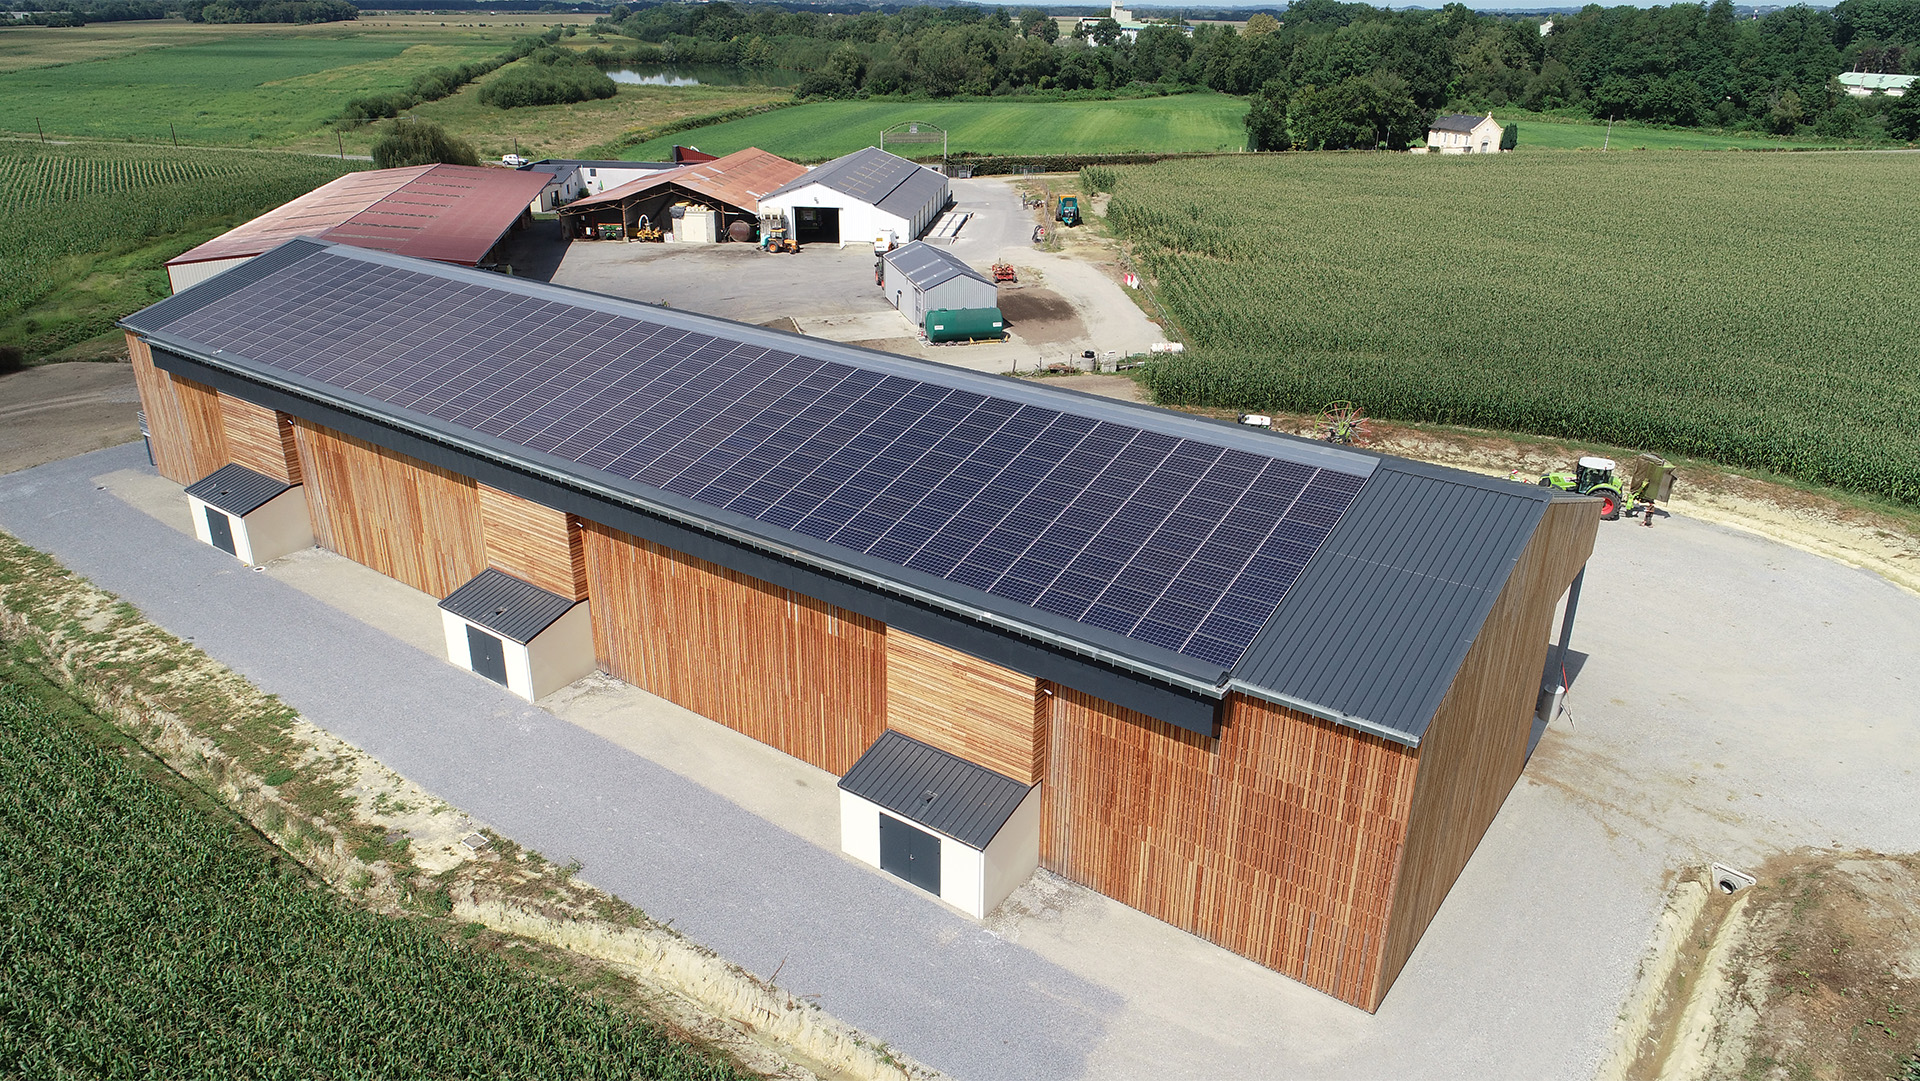 Installation de séchage solaire pour permettre d’améliorer la qualité du fourrage pour l’alimentation des brebis de la vallée d’Ossau.